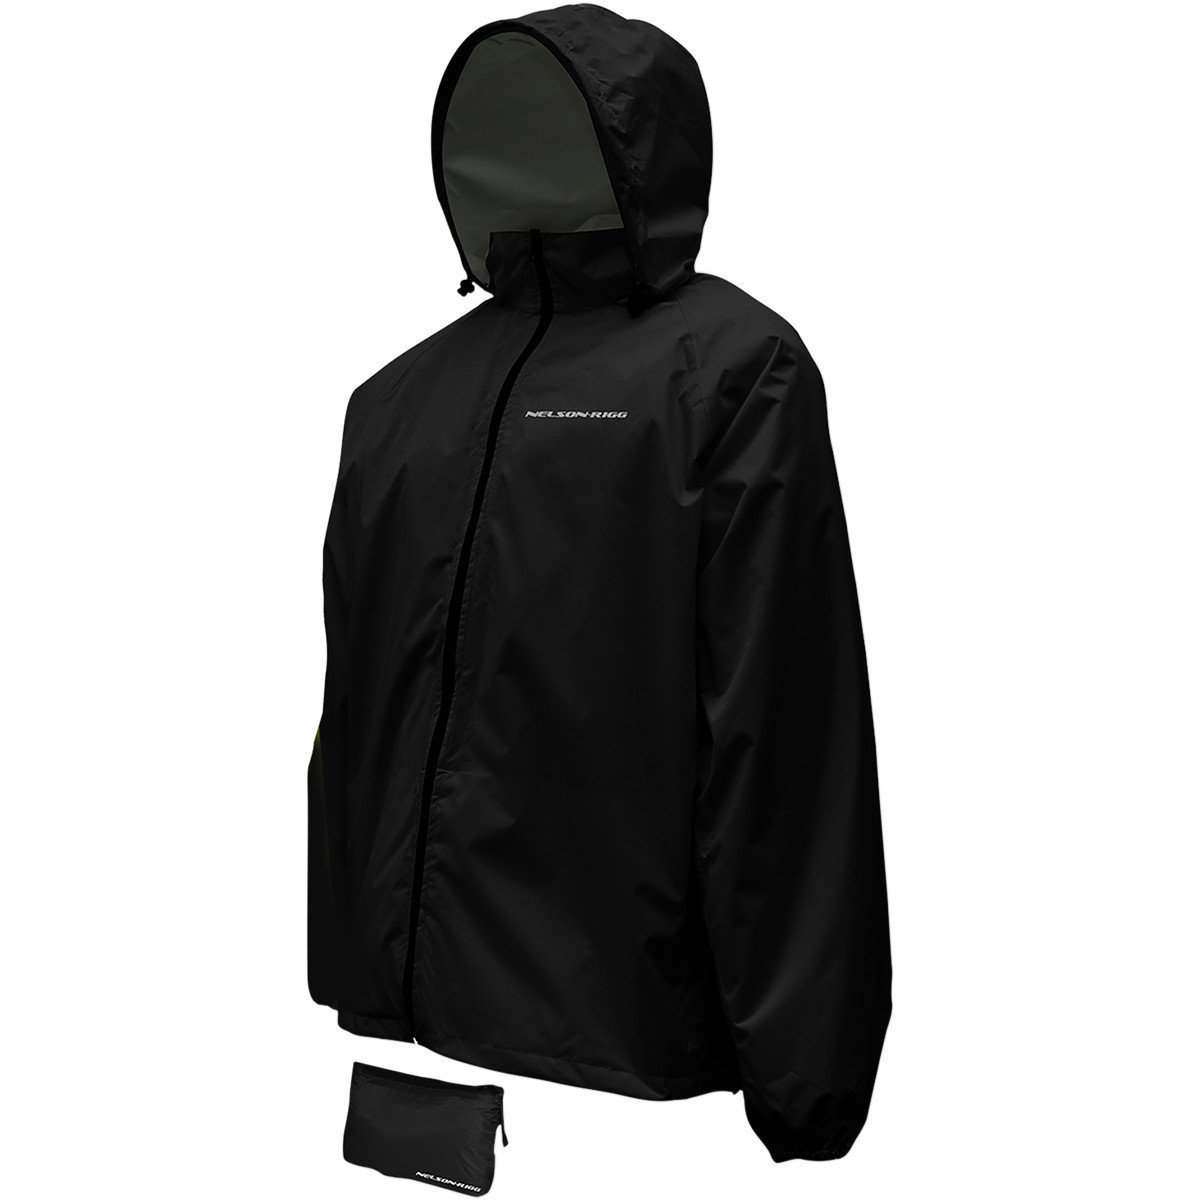 Regenjas voor motorfiets Nelson Rigg Rain Jacket Compact Black XL